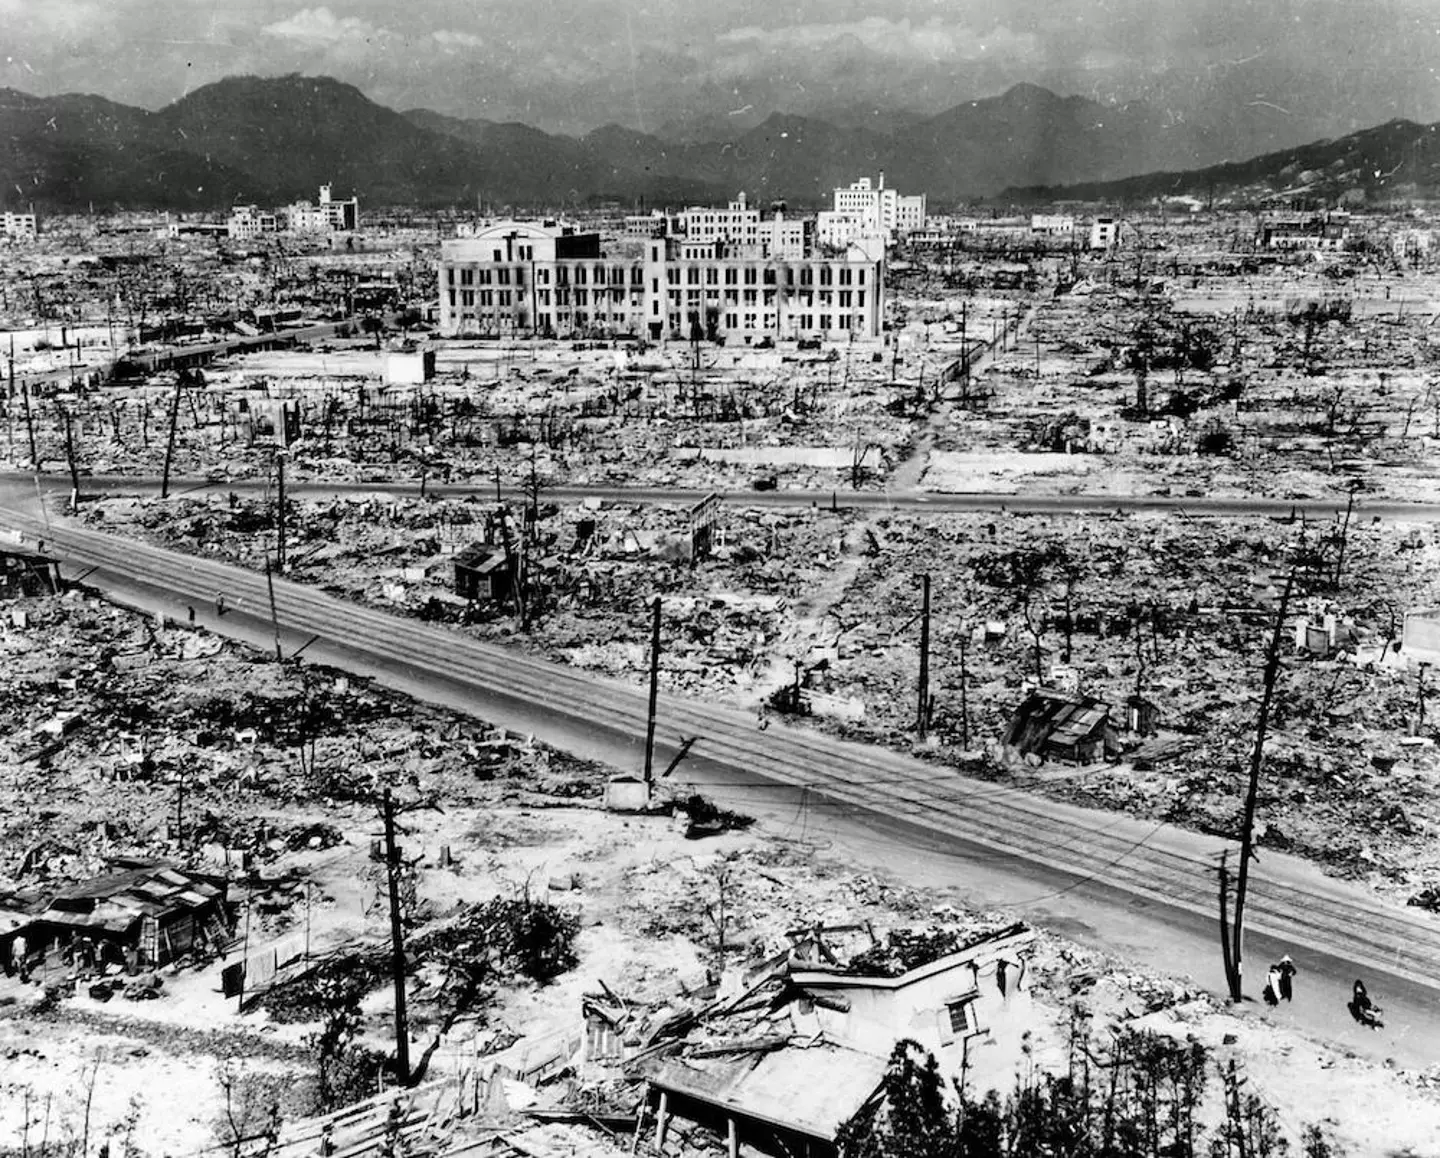 Miyake survived the atomic bombing of Hiroshima.